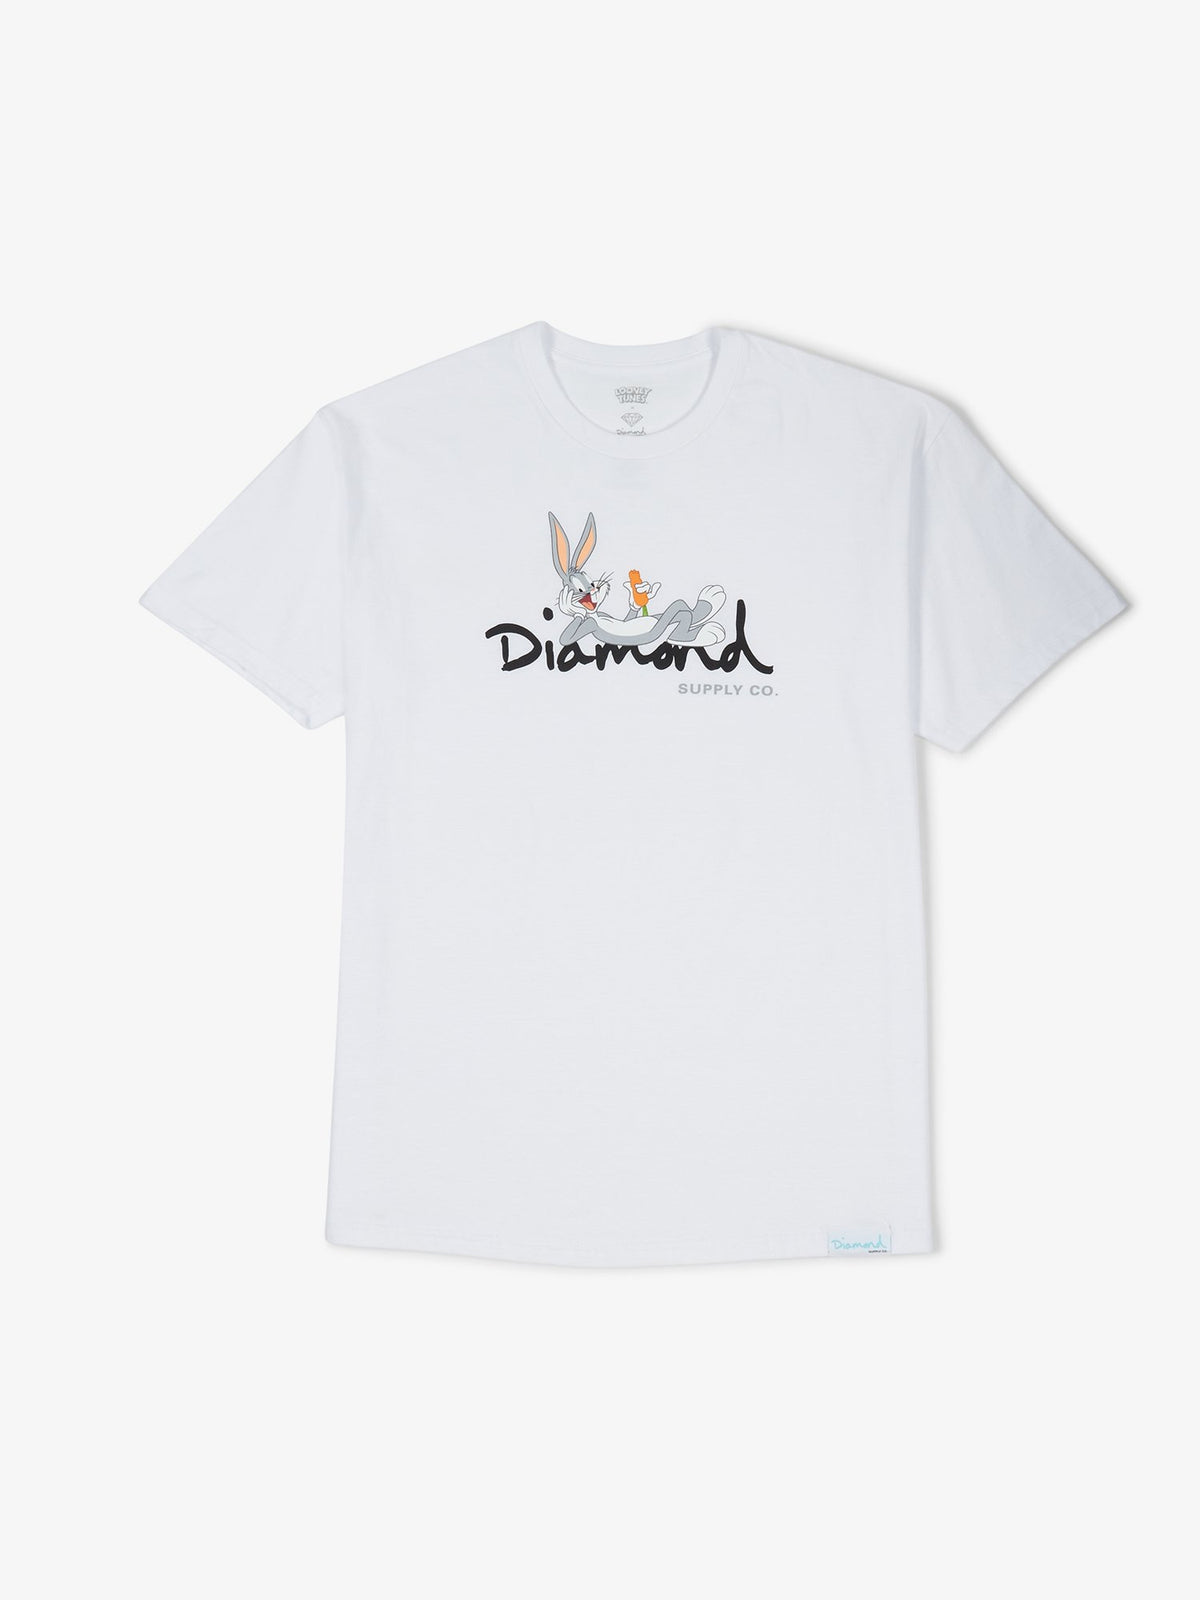 Diamond Supply Bugs OG T-Shirt Tee White 